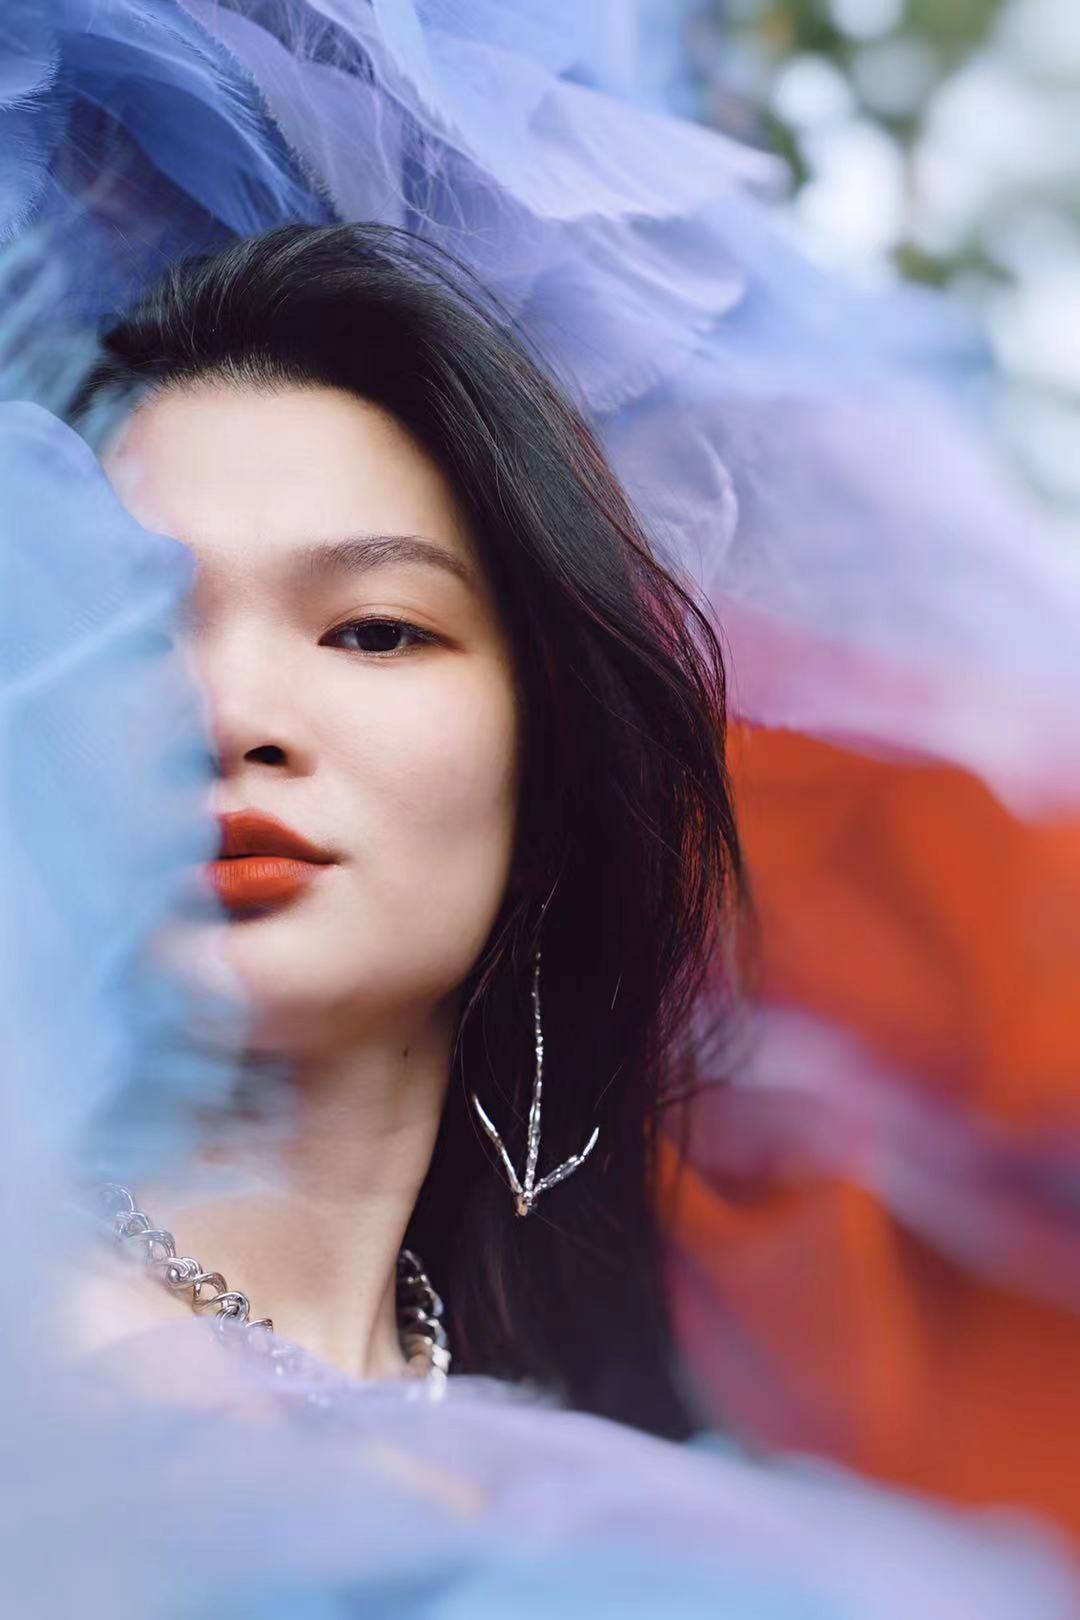 苏运莹同名新专辑上线“苏式歌曲”带你找寻生活中的浪漫